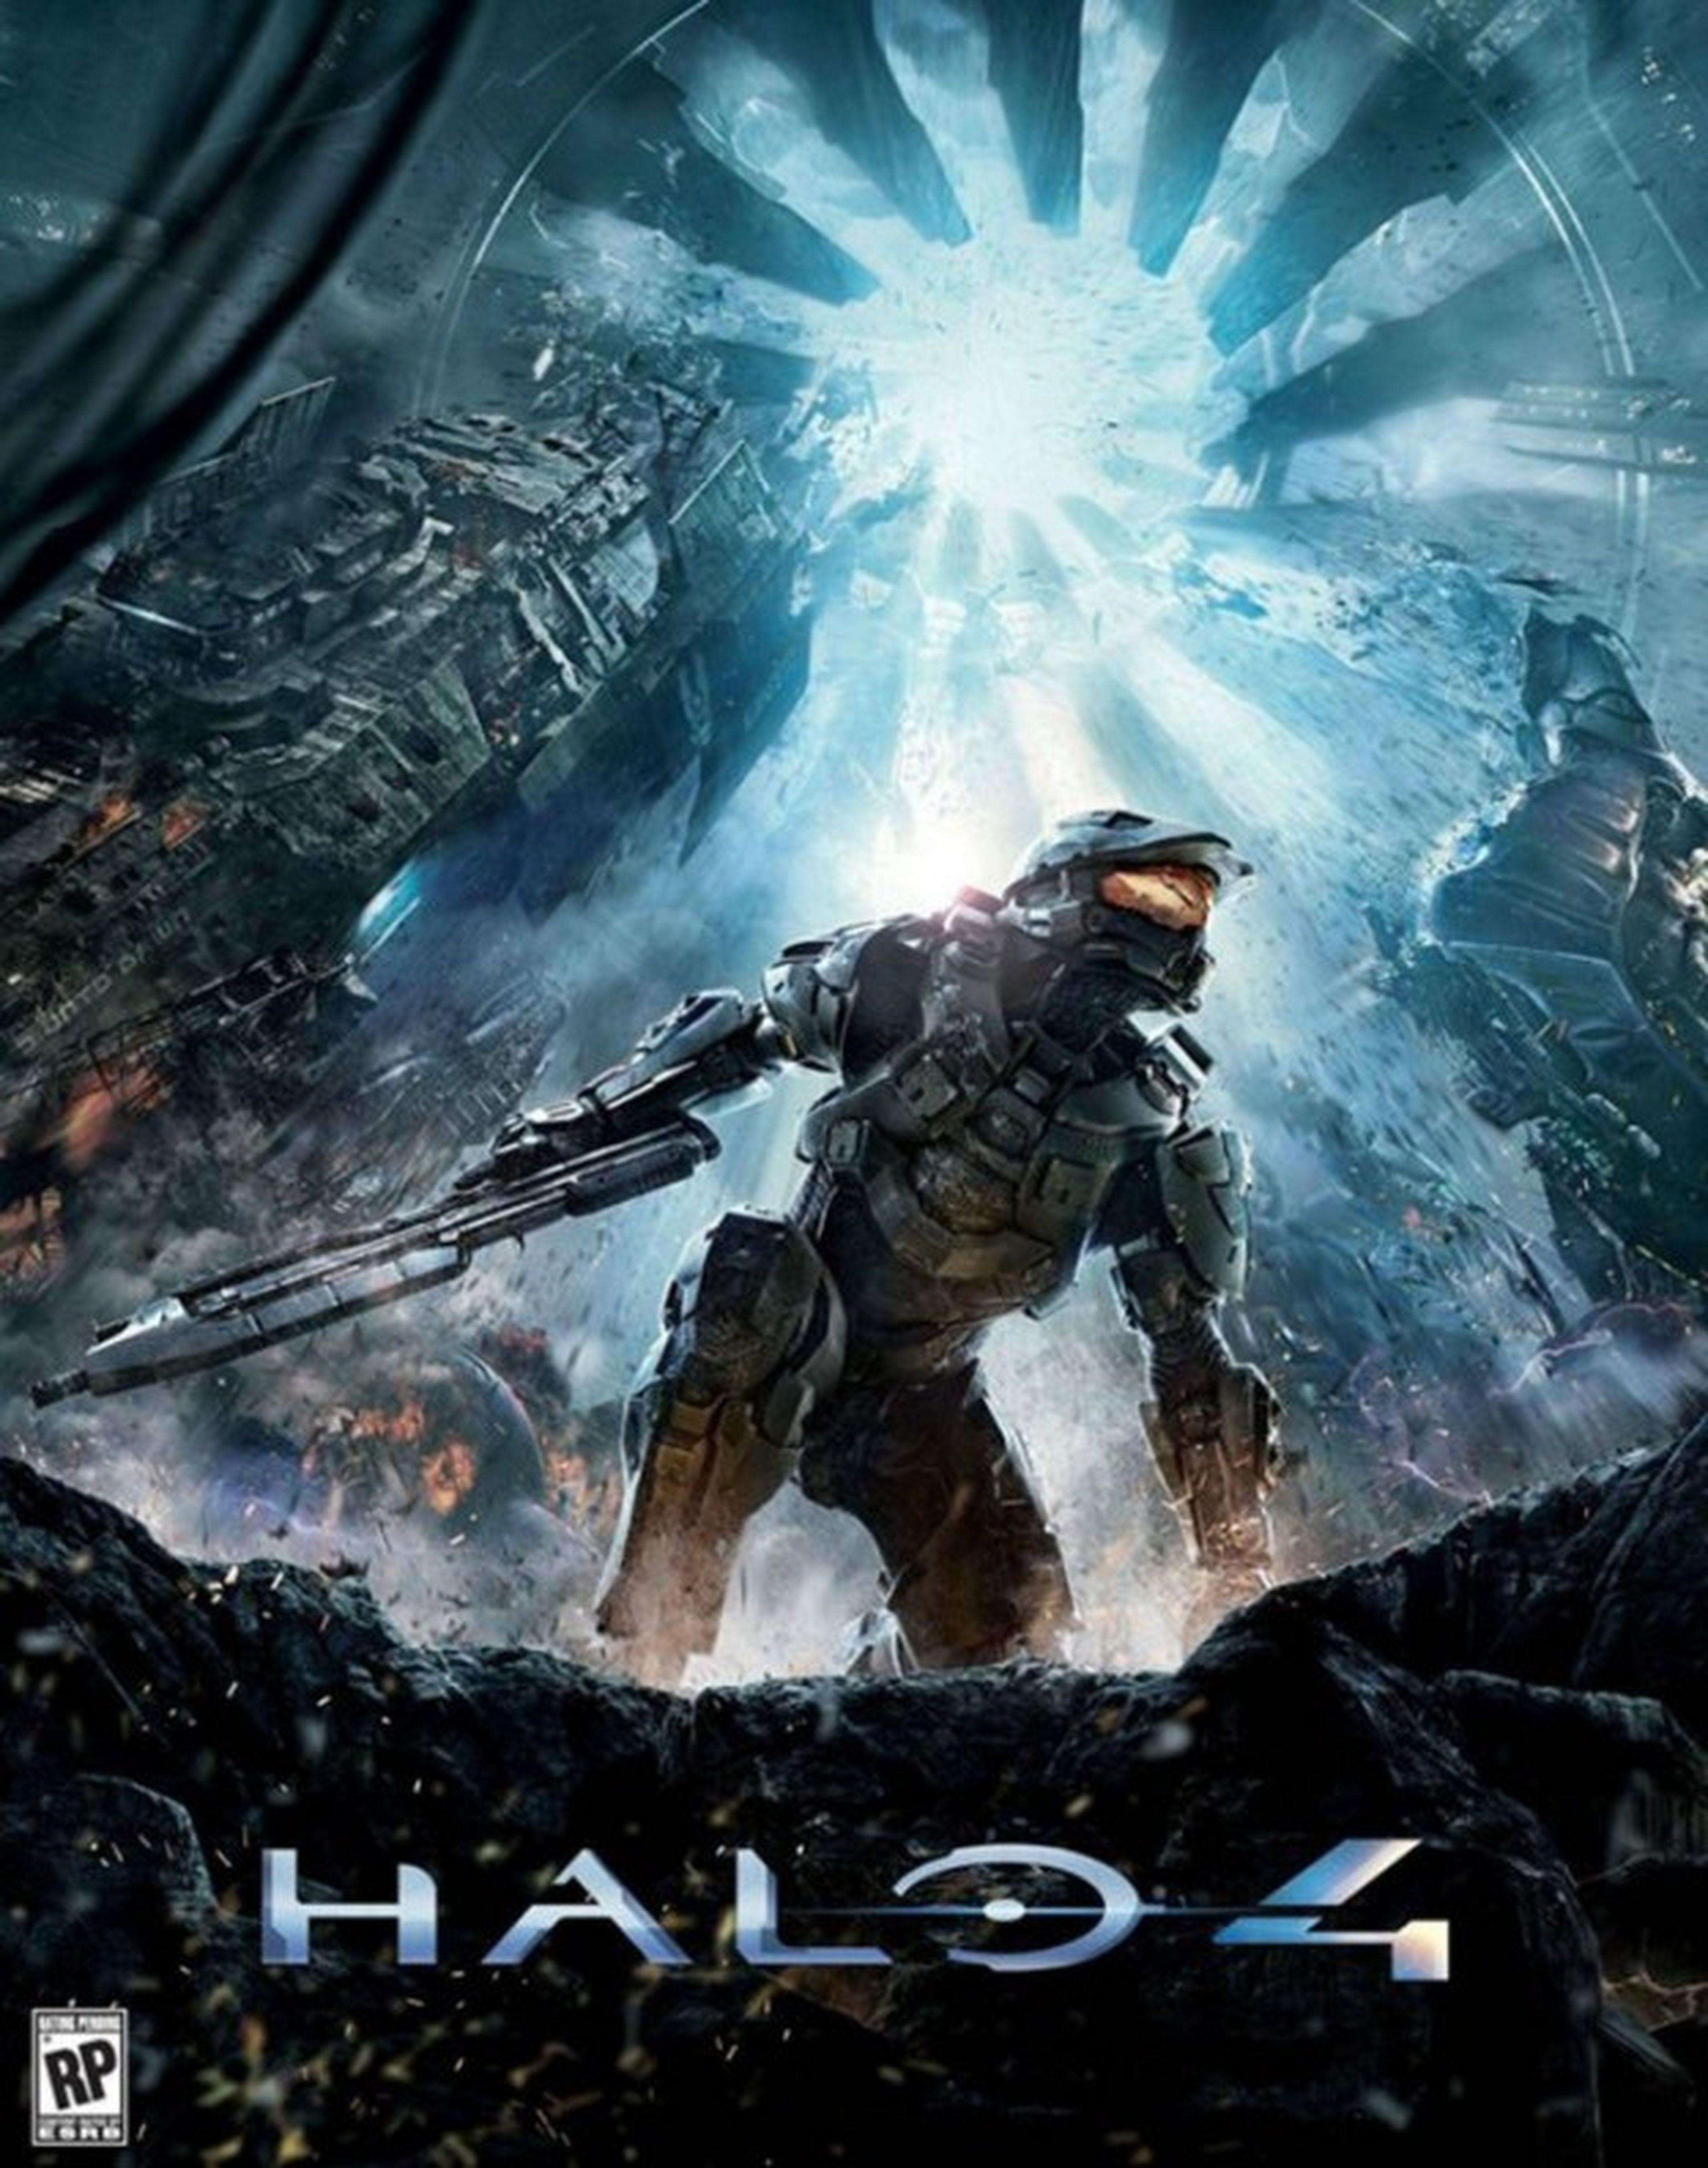 Desvelada la portada de Halo 4